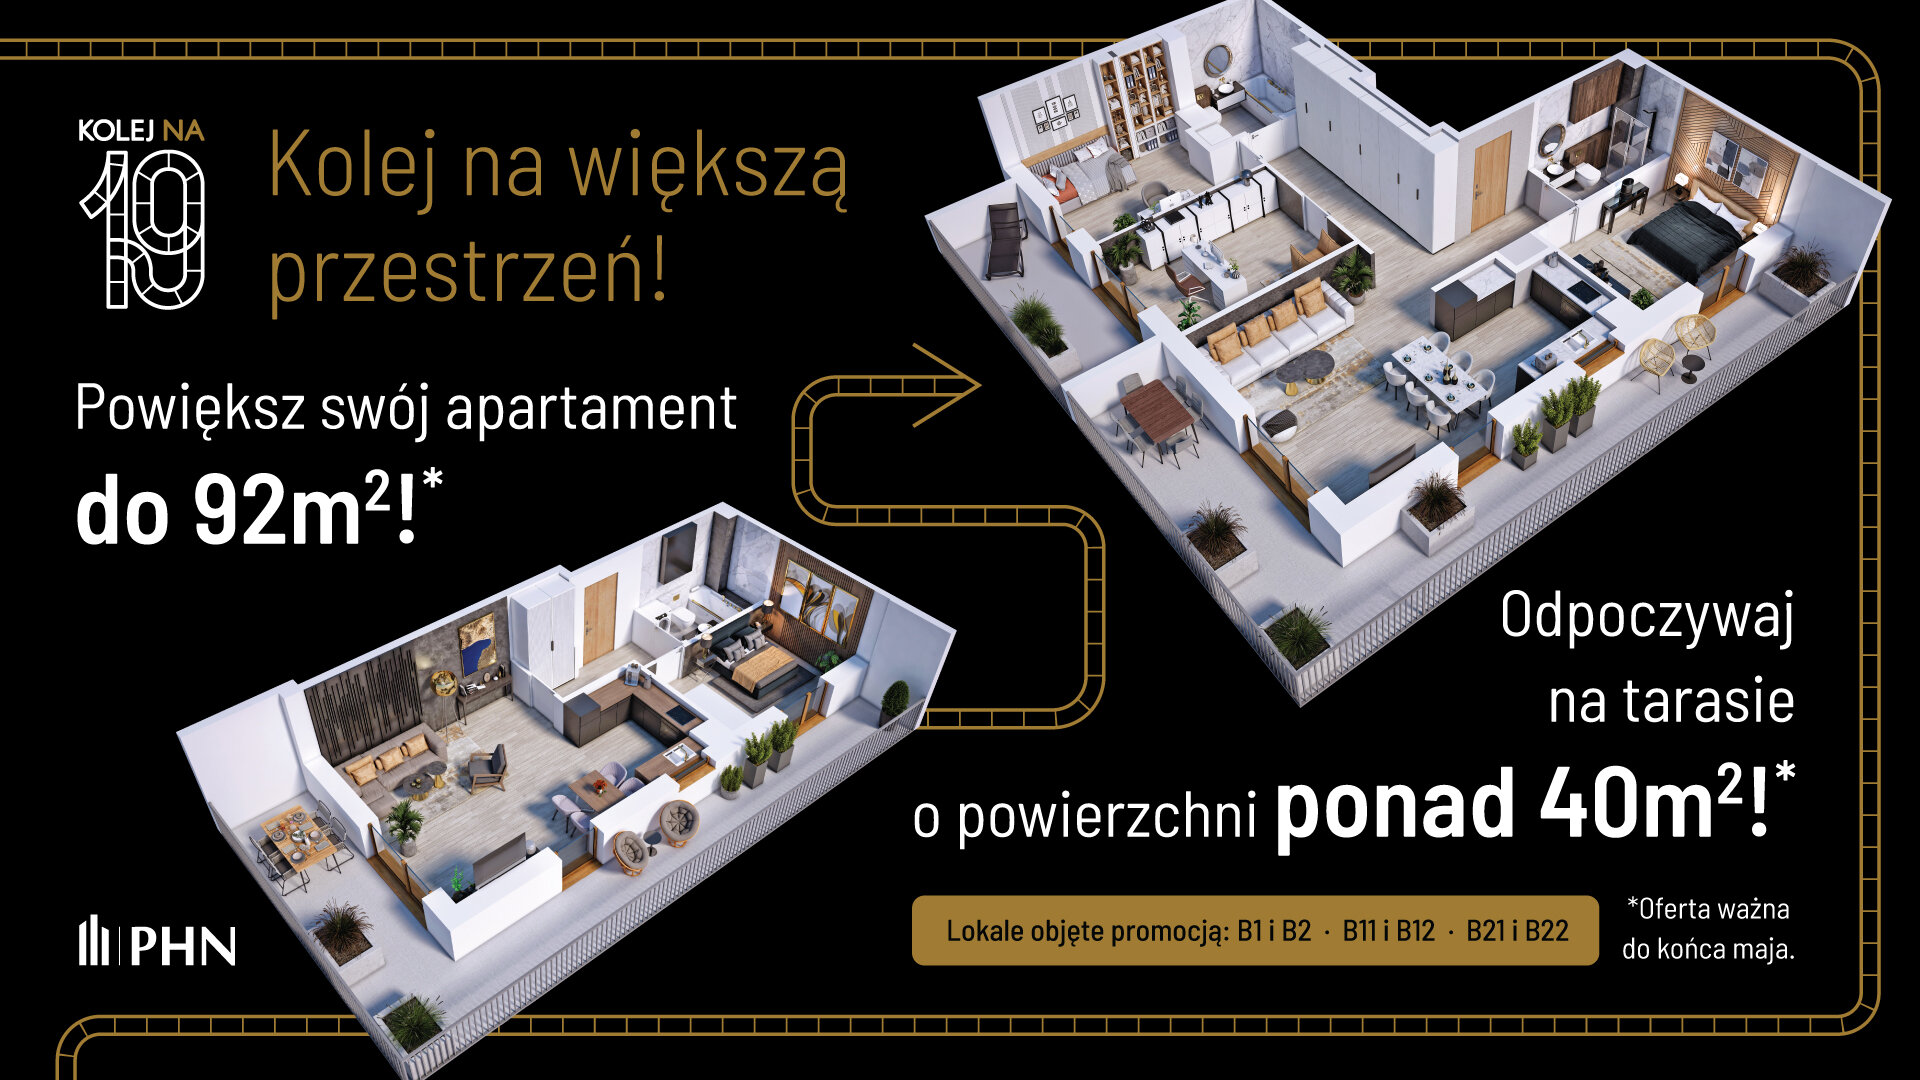 Wiosenna promocja w KOLEJ NA 19 - Apartament, 2 pokoje, Warszawa,39.53 m²,831 352 zł